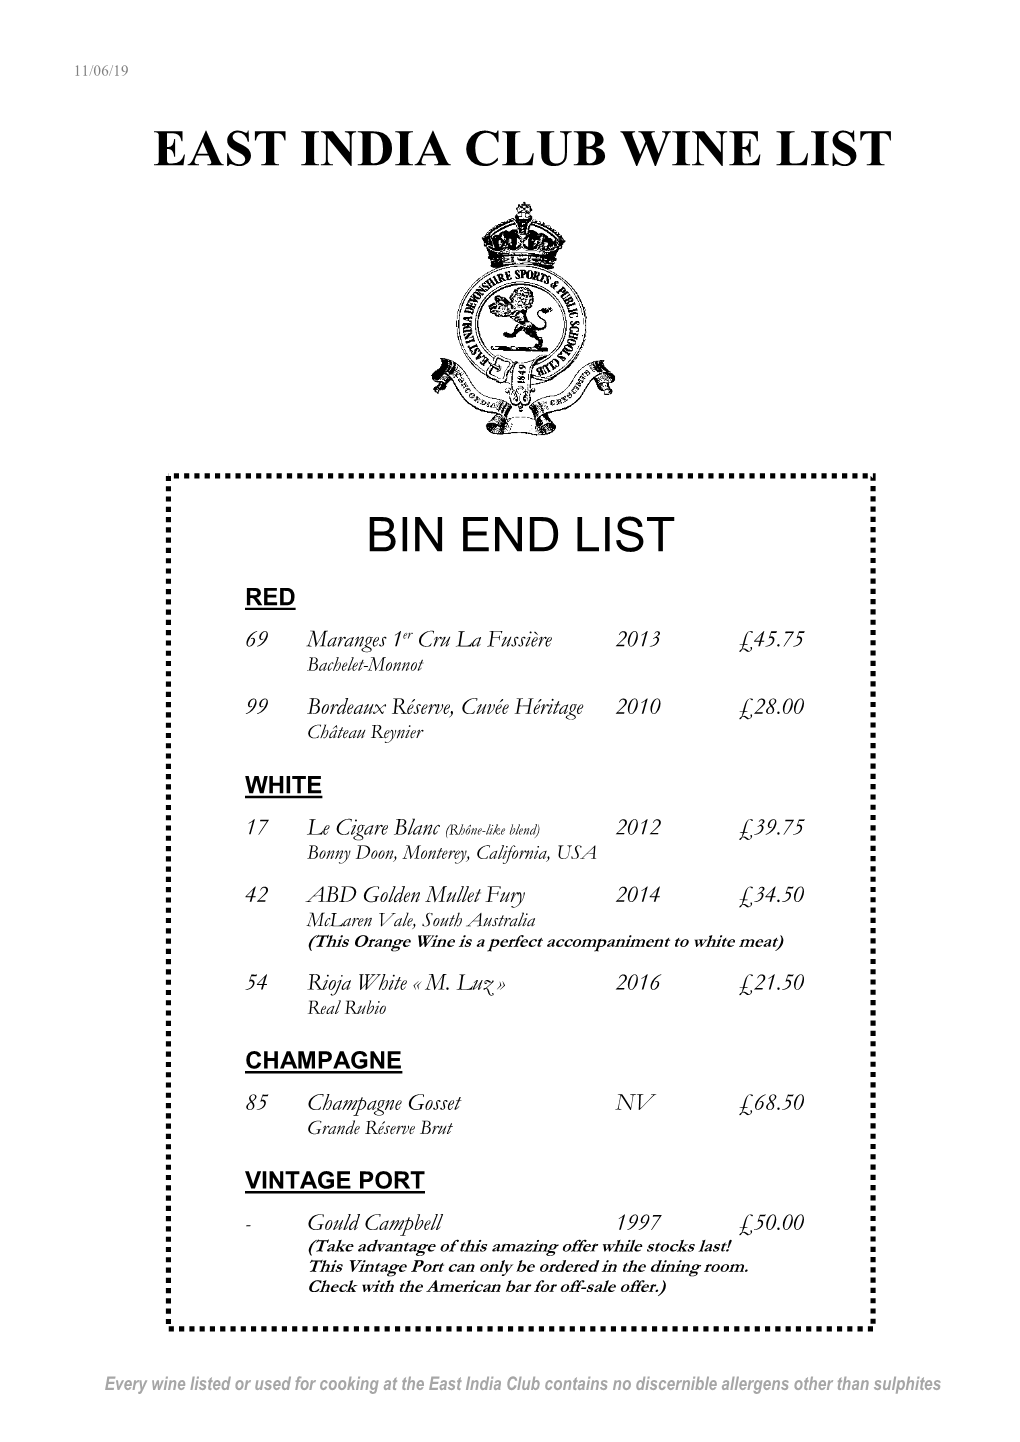 East India Club Wine List